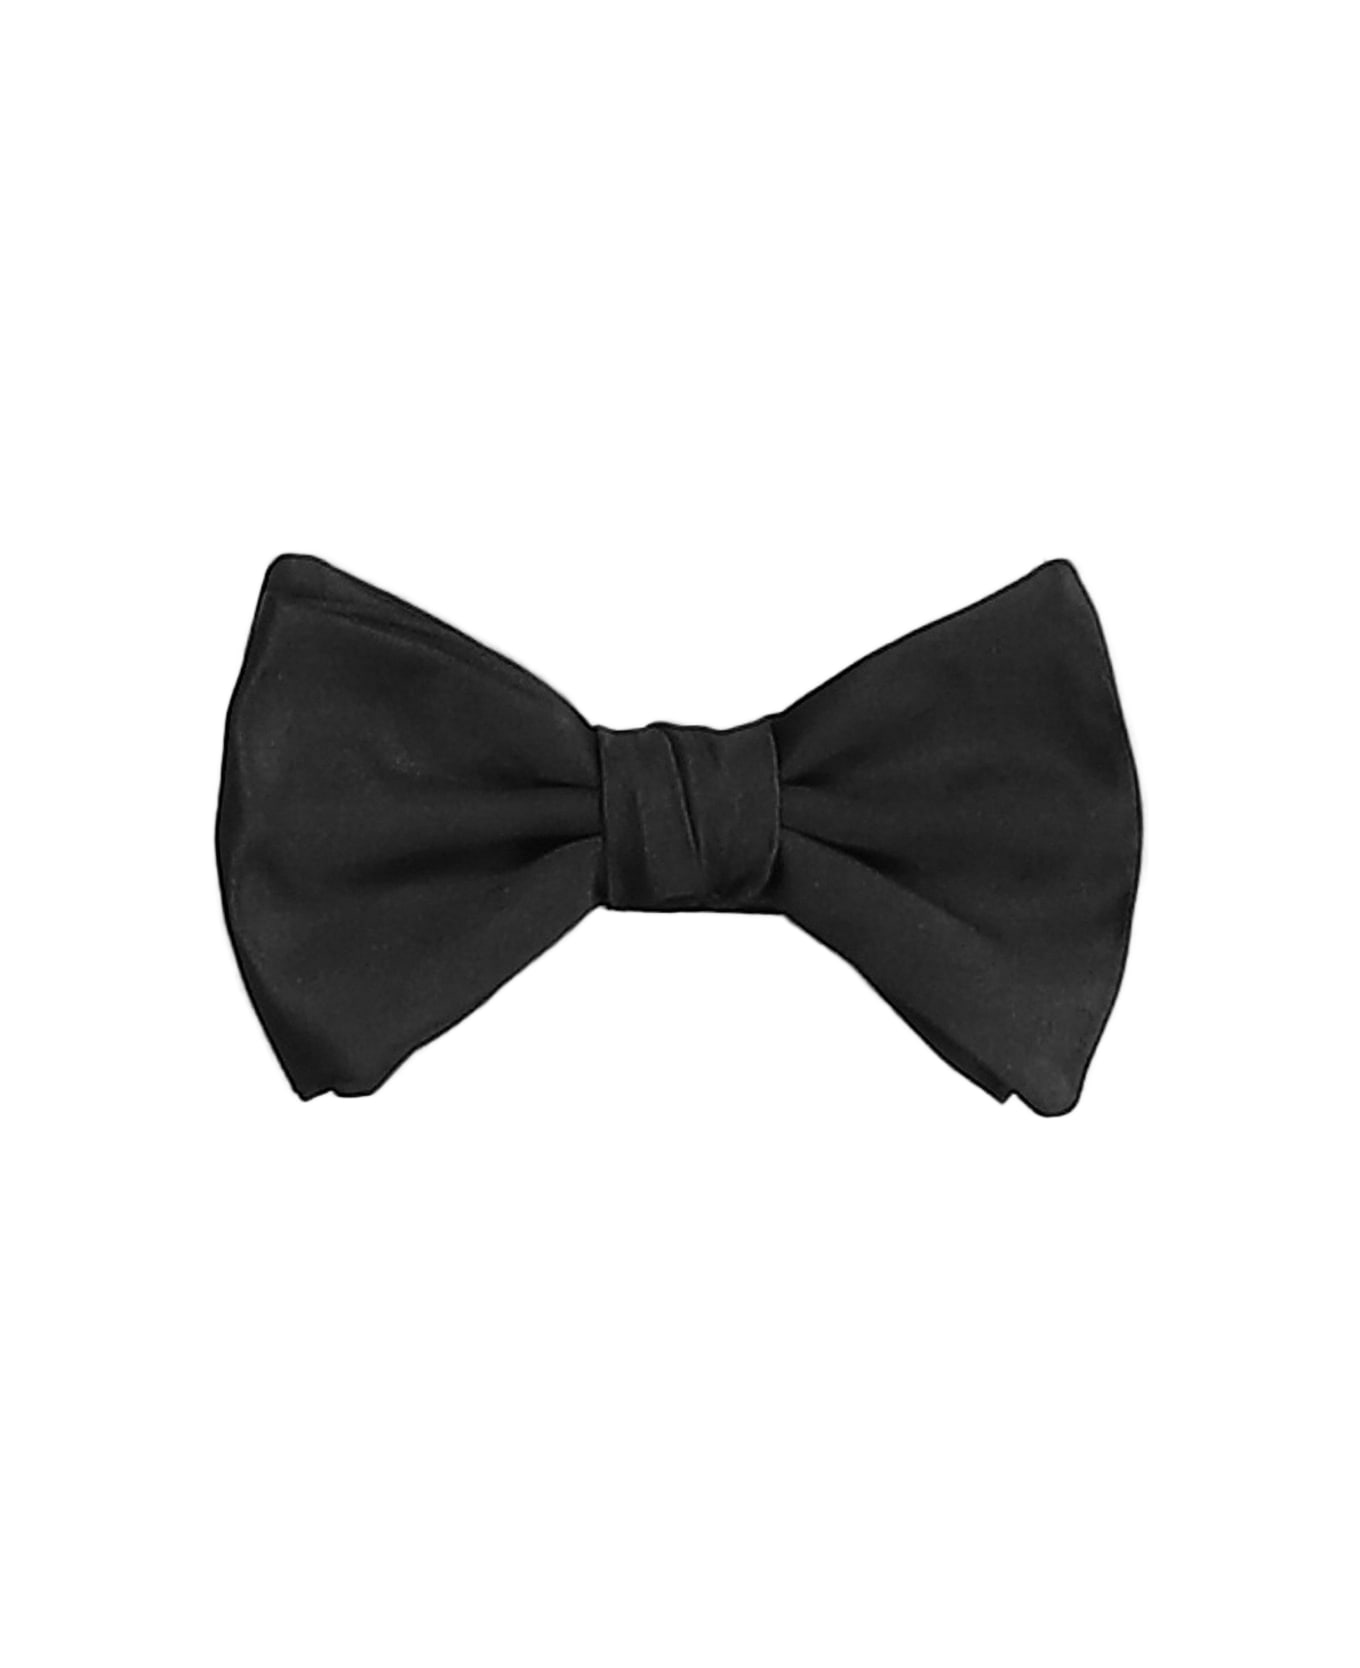 Emporio Armani Bow Tie - black ネクタイ